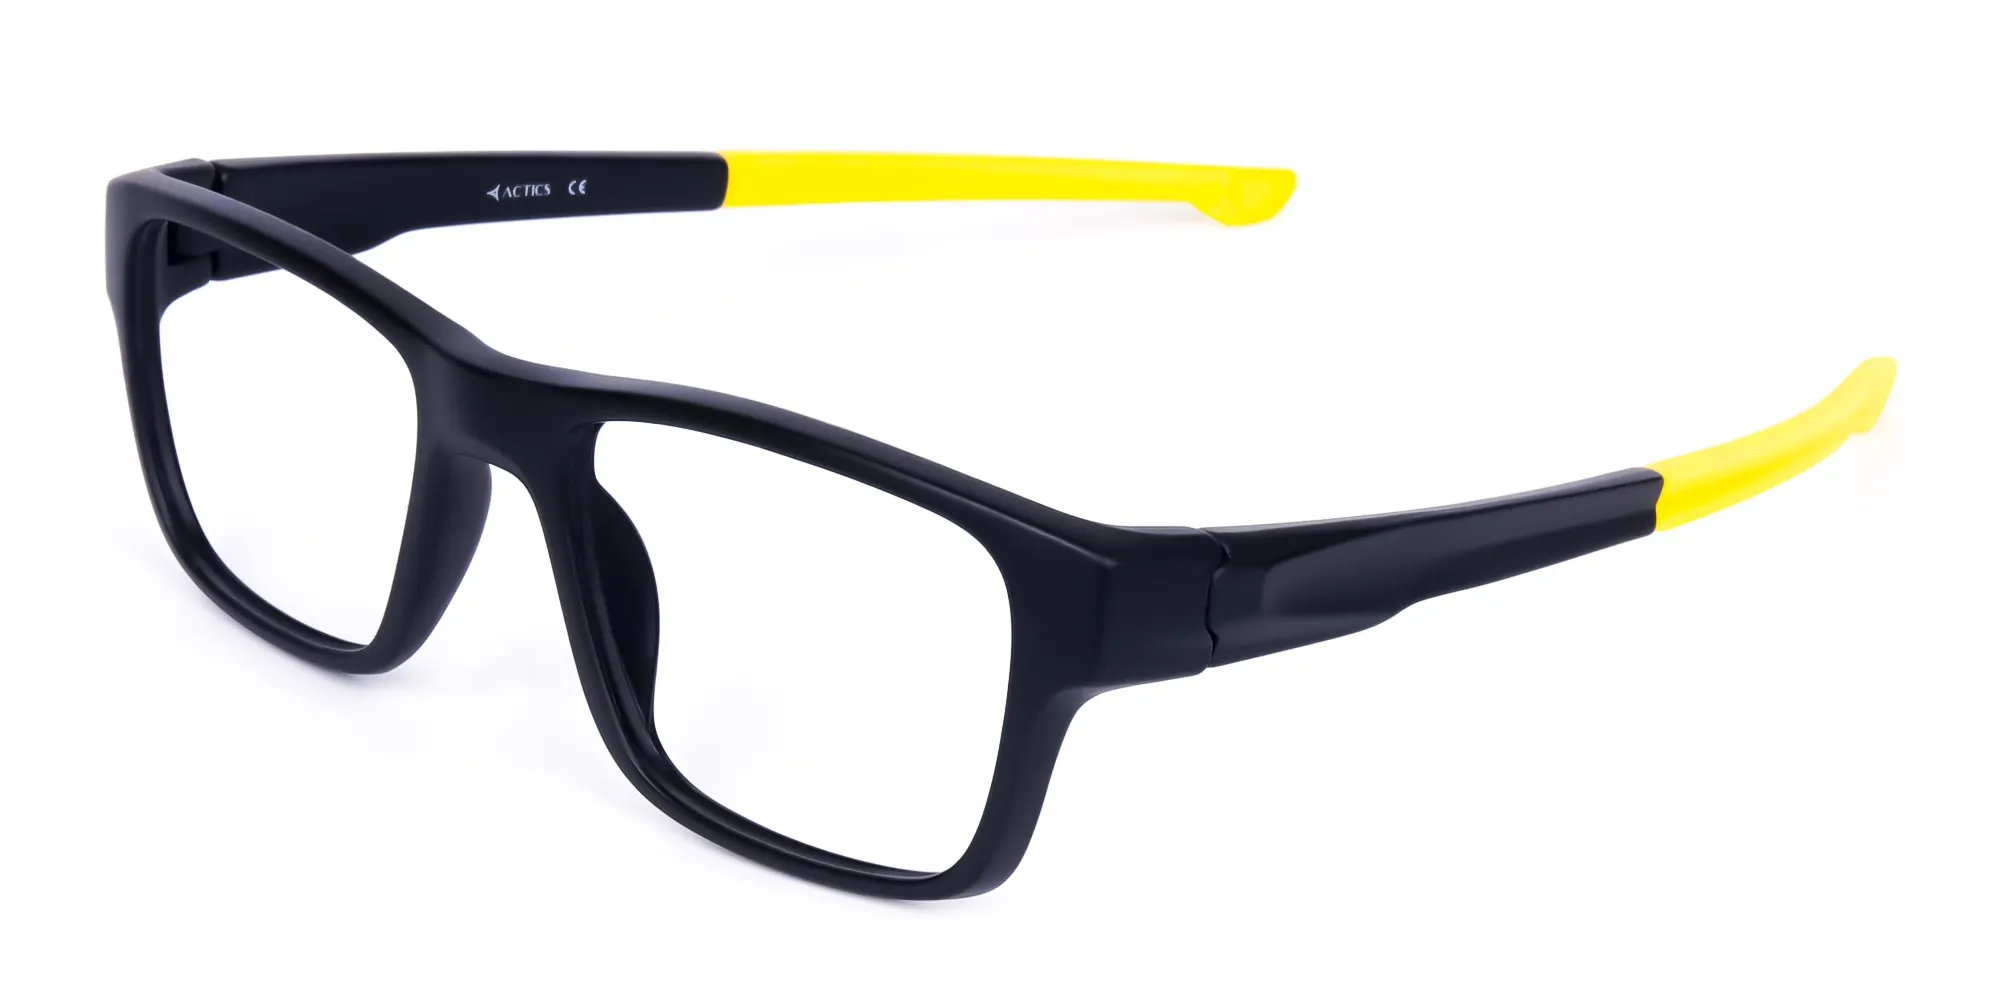 Bright Yellow and Black Rectangular Glasses-2